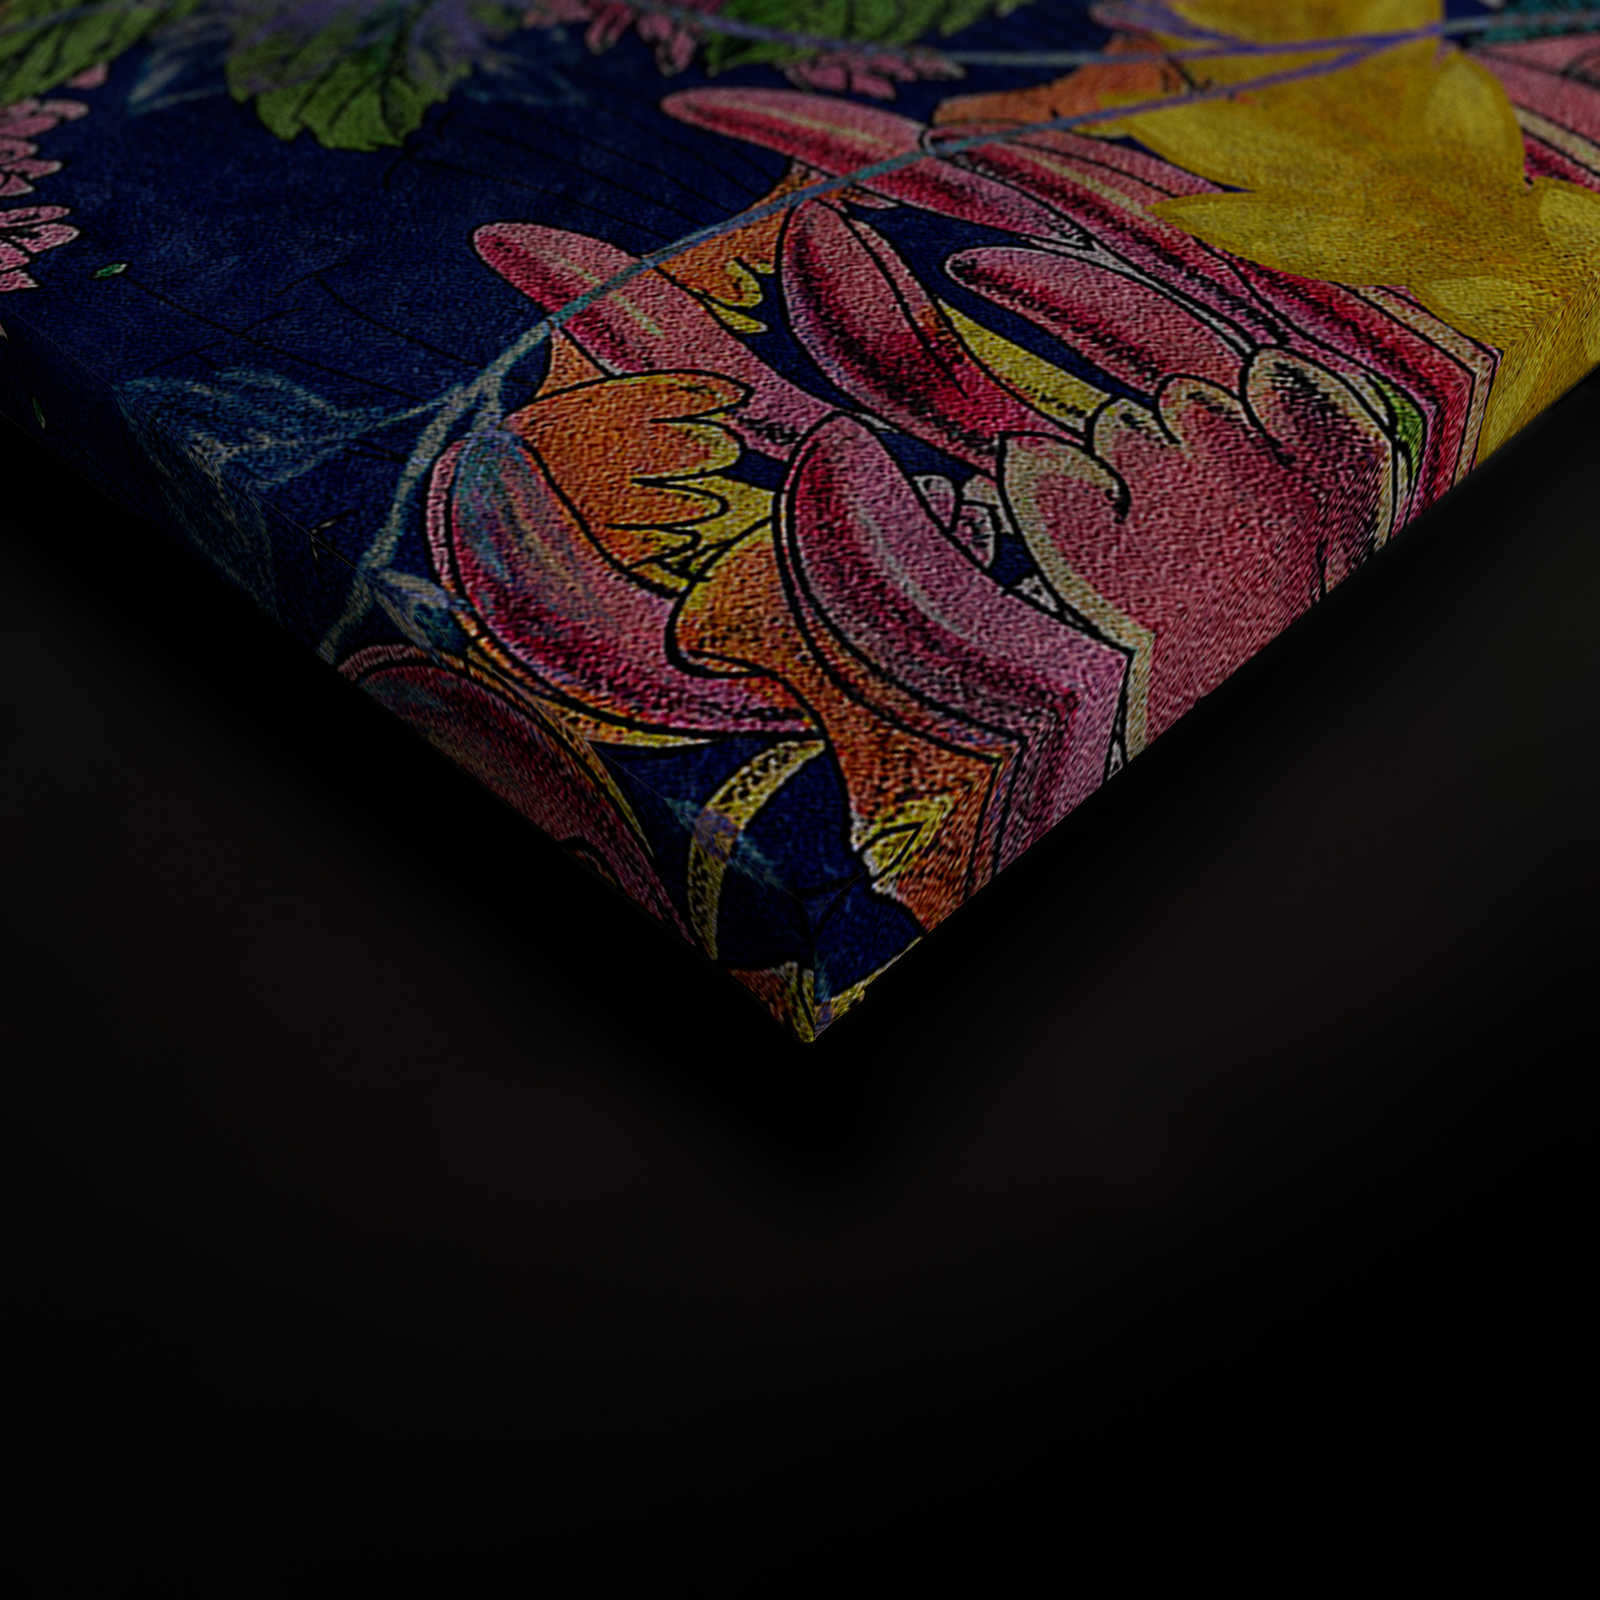             Tropical Hero 1 - Toile Fleurs & Perroquet couleurs intenses - 1,20 m x 0,80 m
        